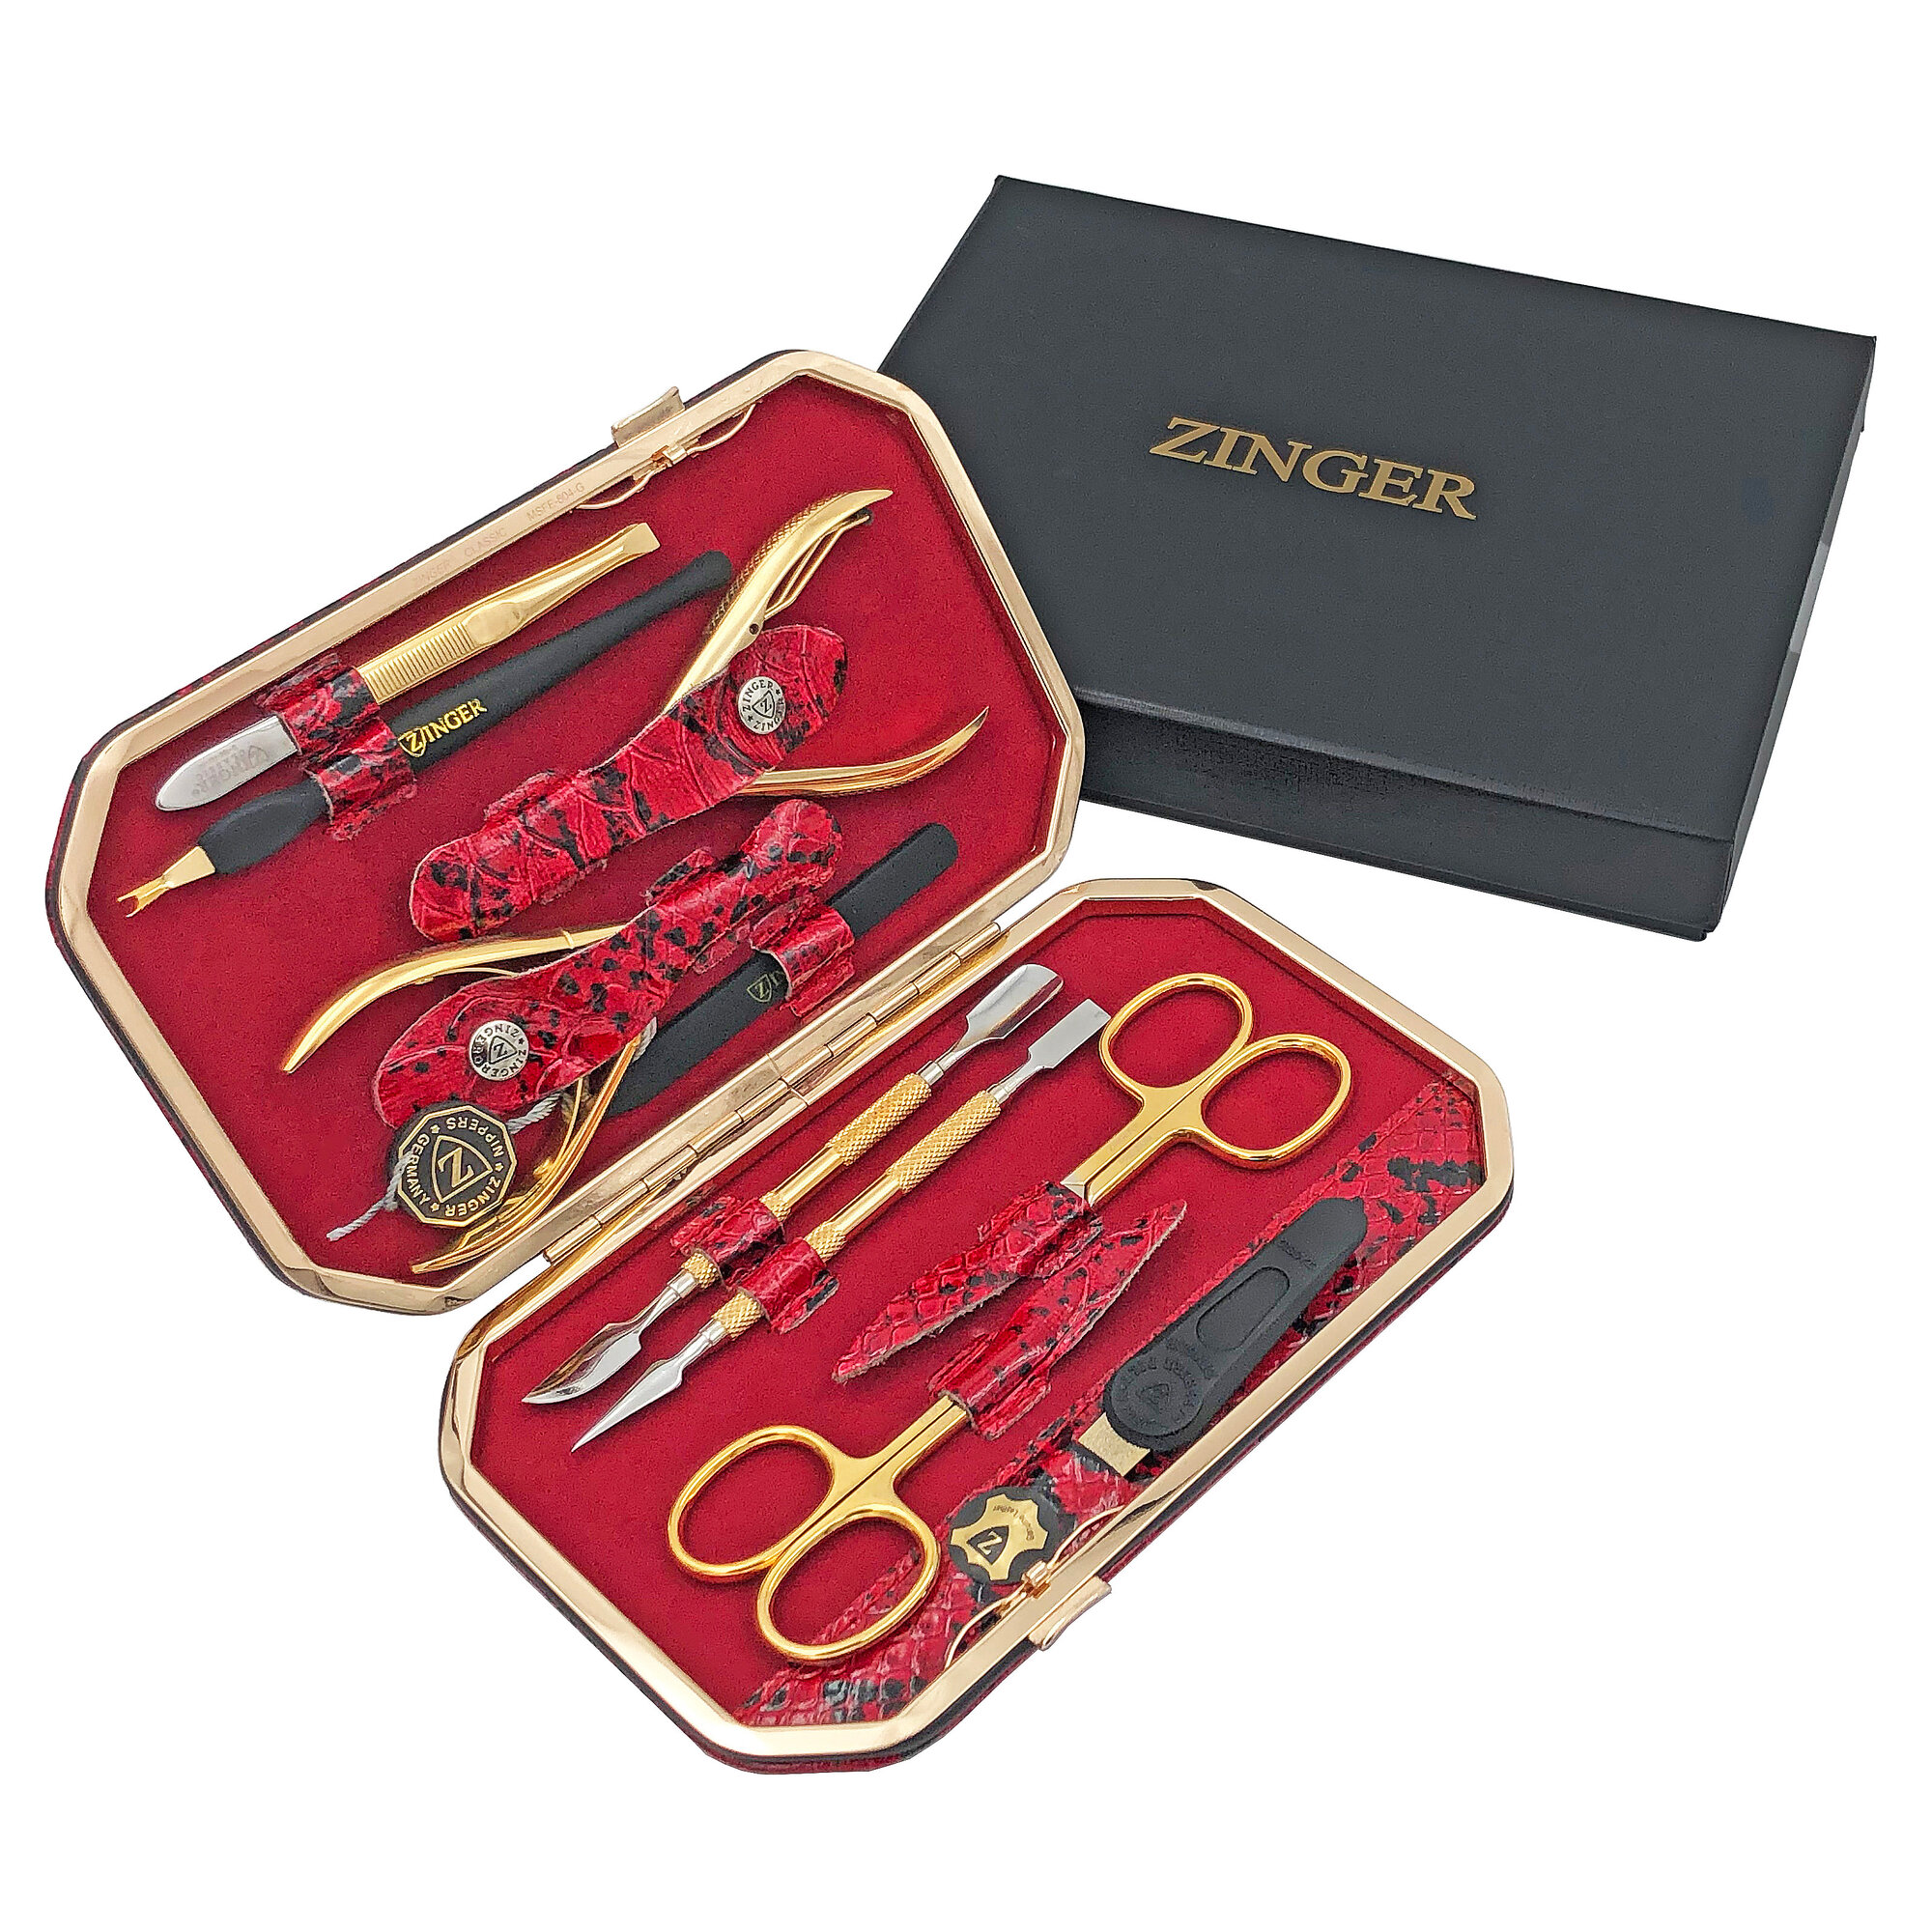 Маникюрный набор Zinger MSFE-804 G, 10 предметов, позолоченный/красный черный